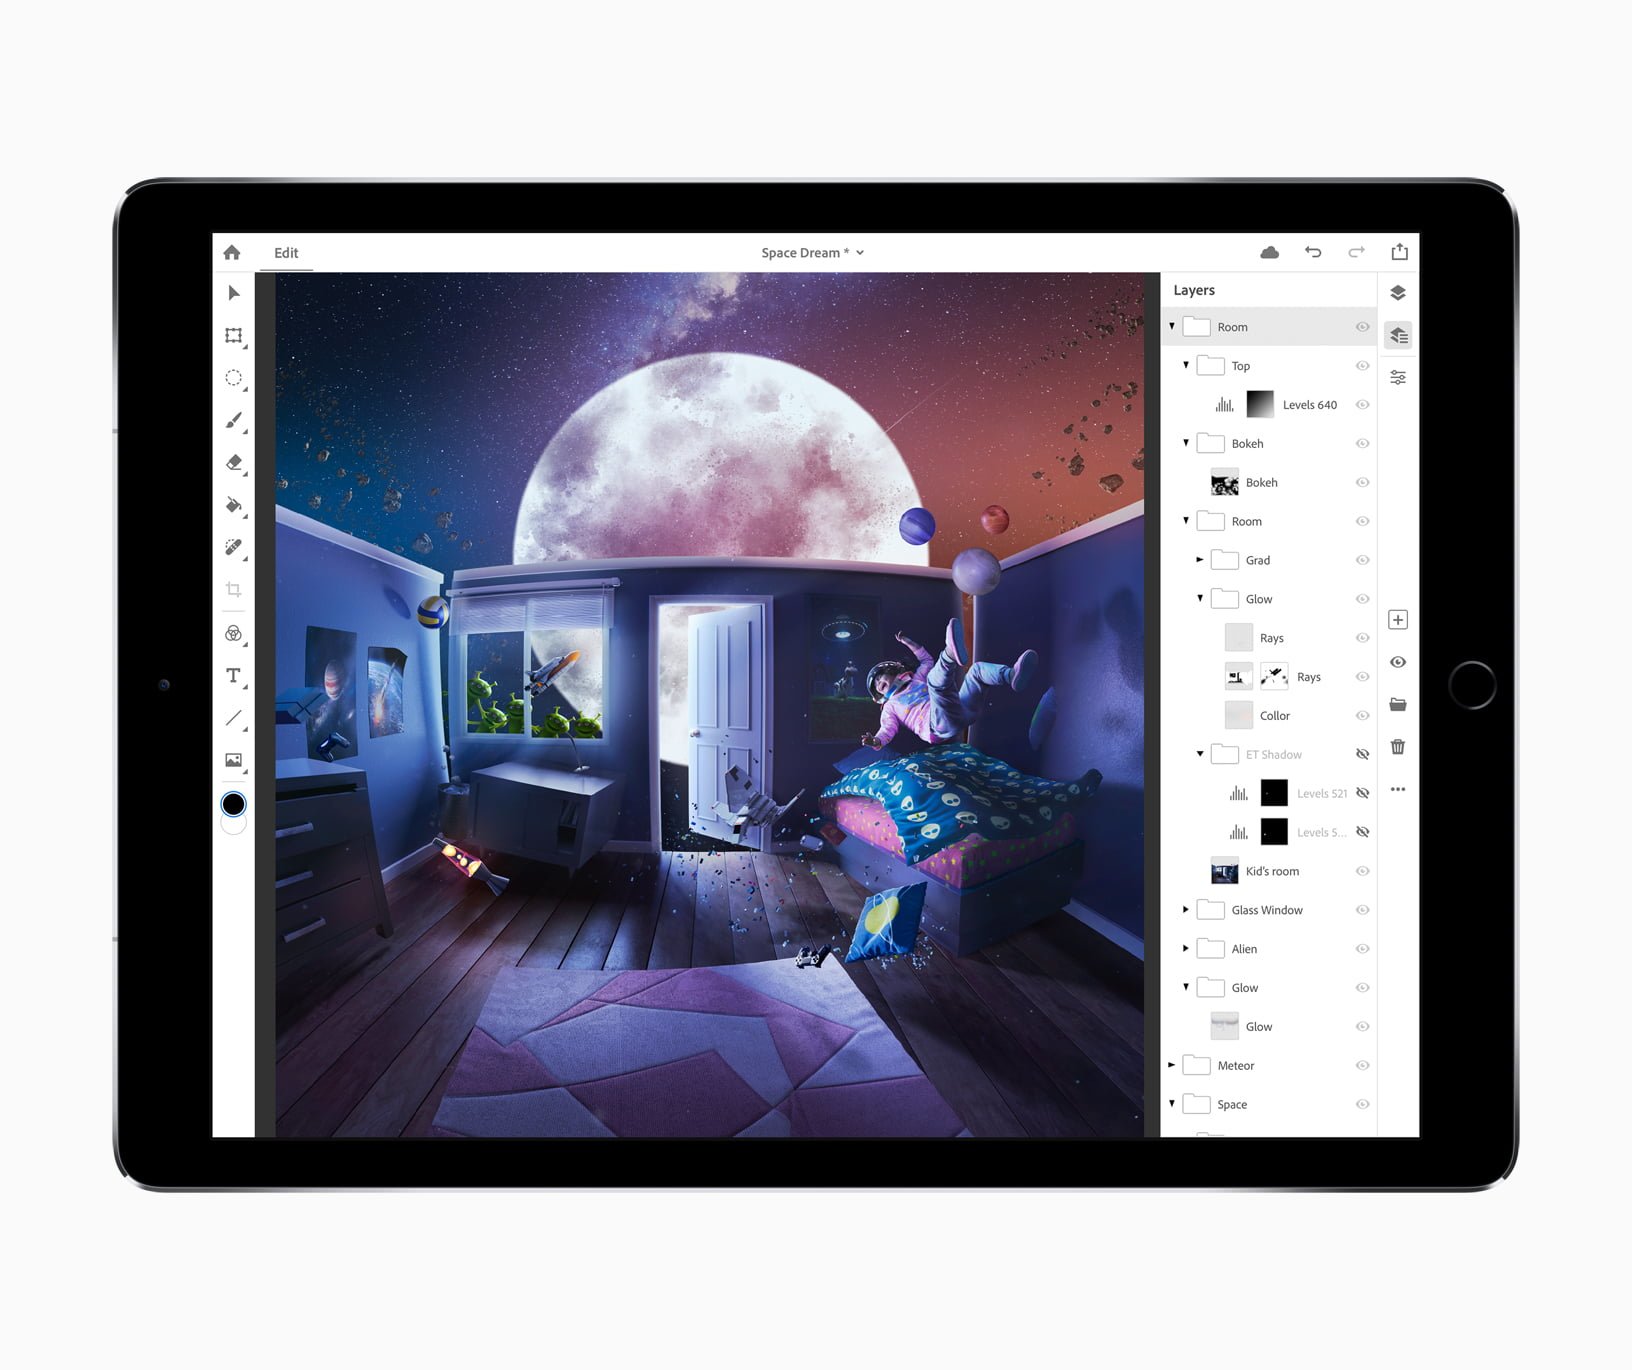 Adobe Photoshop iPad Pro Real Photoshop